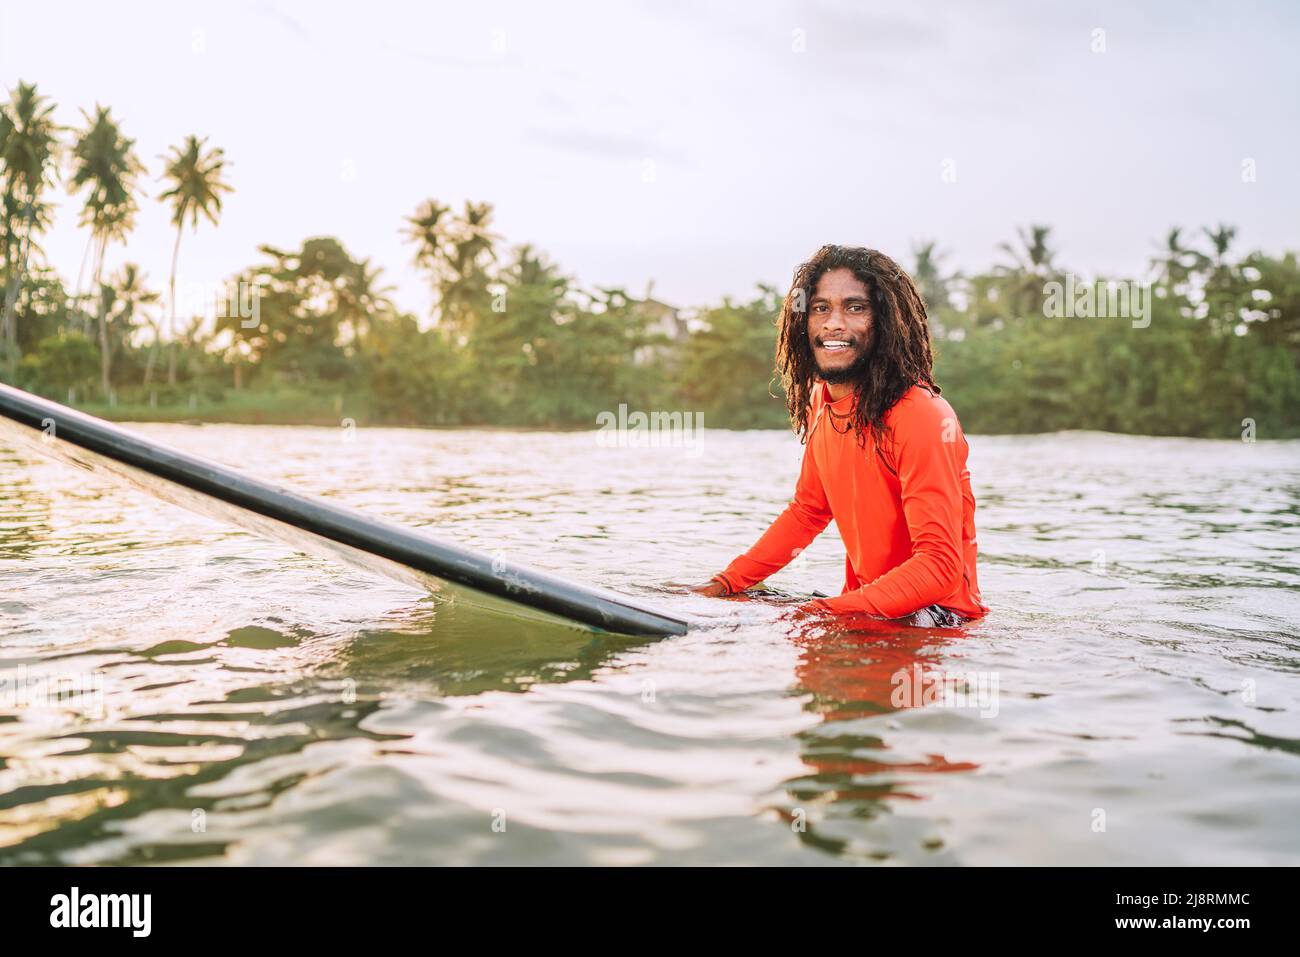 Schwarzer langhaariger Teenager-Mann, der auf einem langen Surfbrett schwimmt und auf eine Welle wartet, die zum Surfen bereit ist, mit Palmenhain-Sonnenstrahlen. Extreme Wassersportarten o Stockfoto